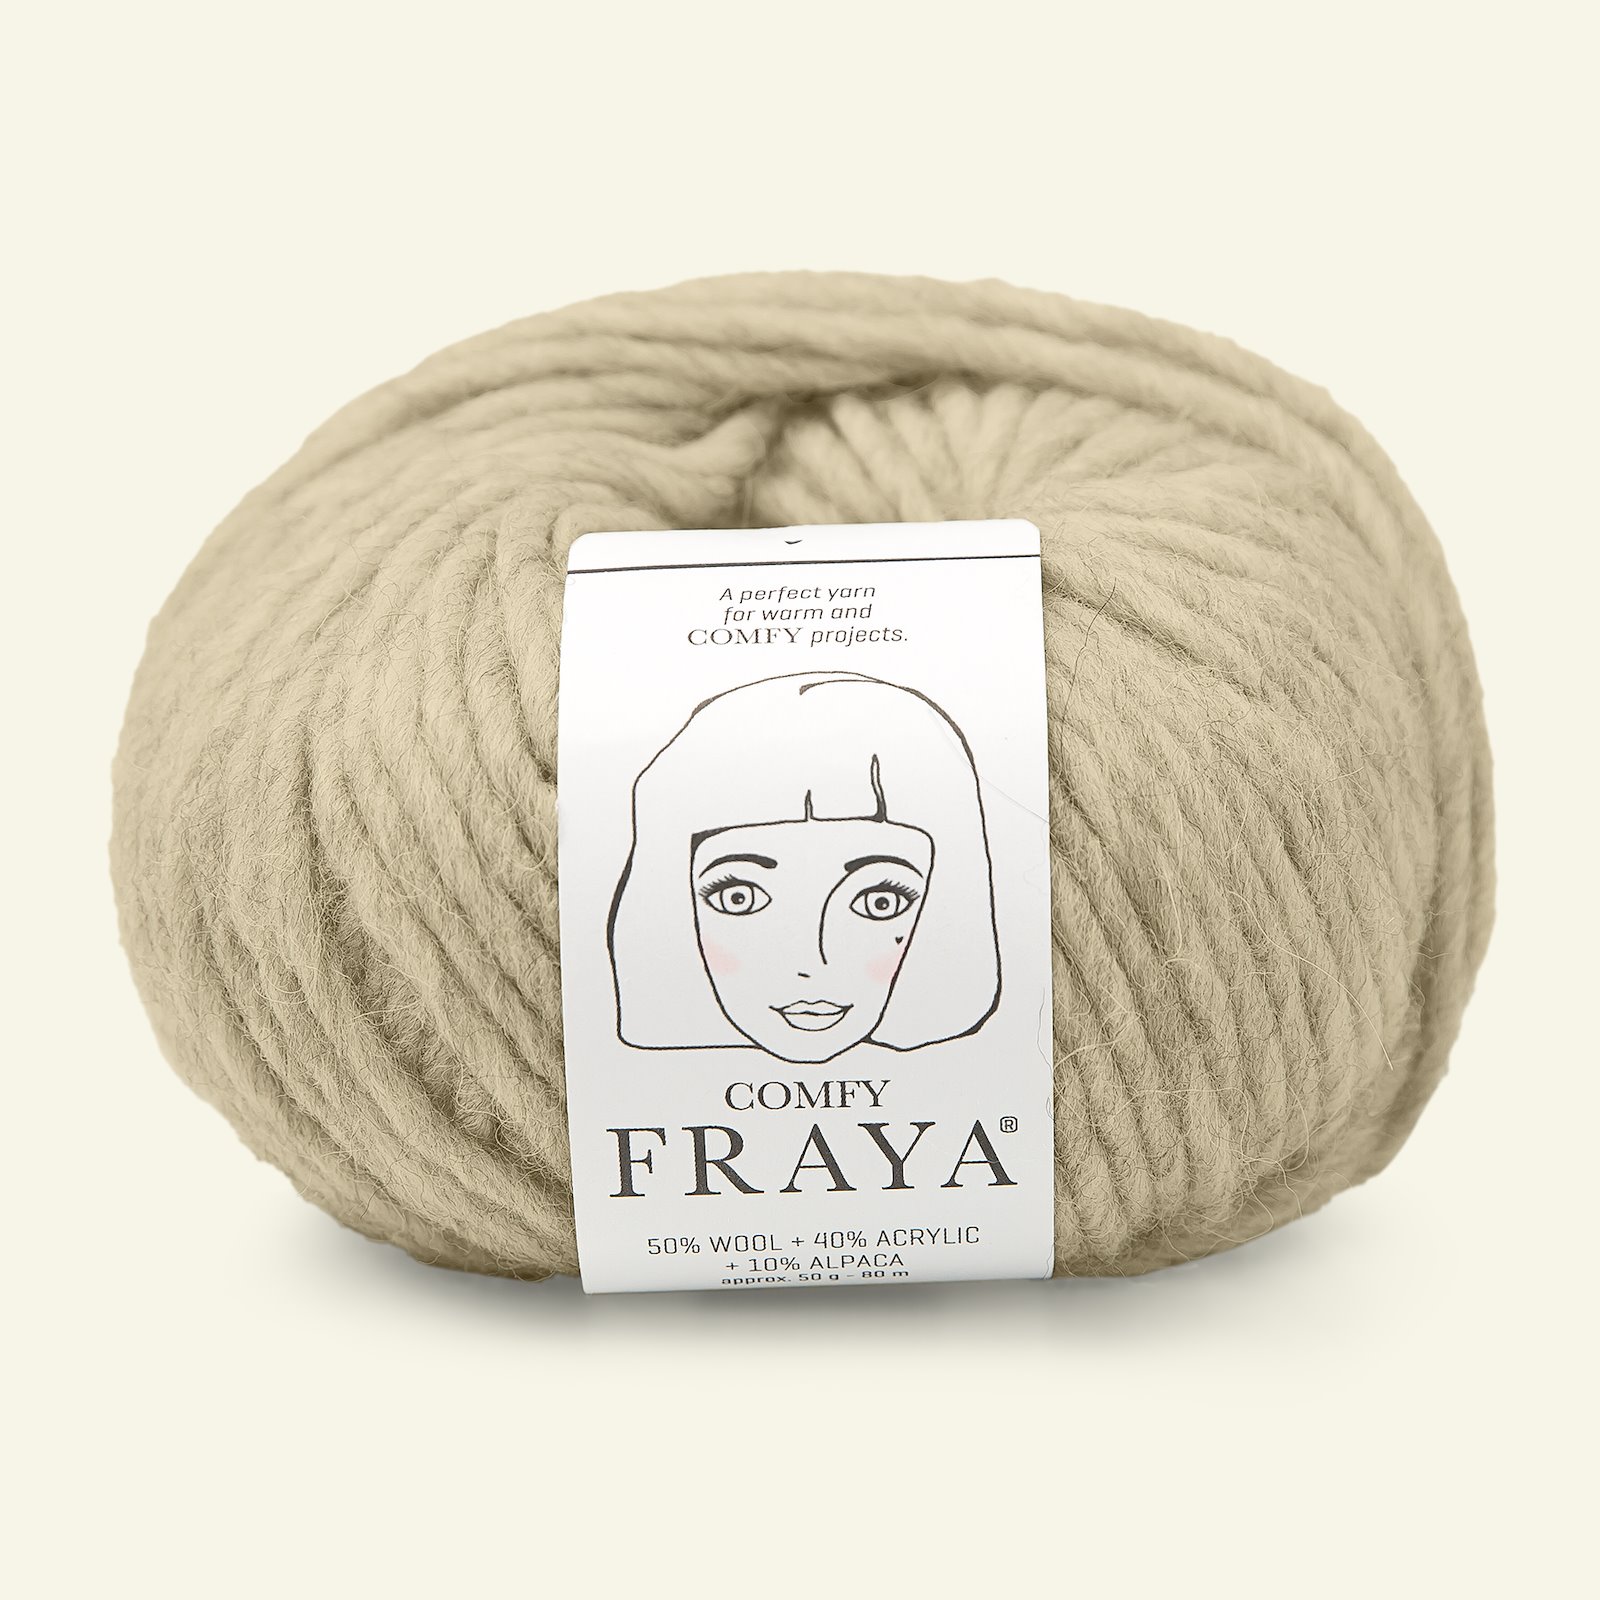 FRAYA, mixed yarn "Comfy", sand 90000951_pack